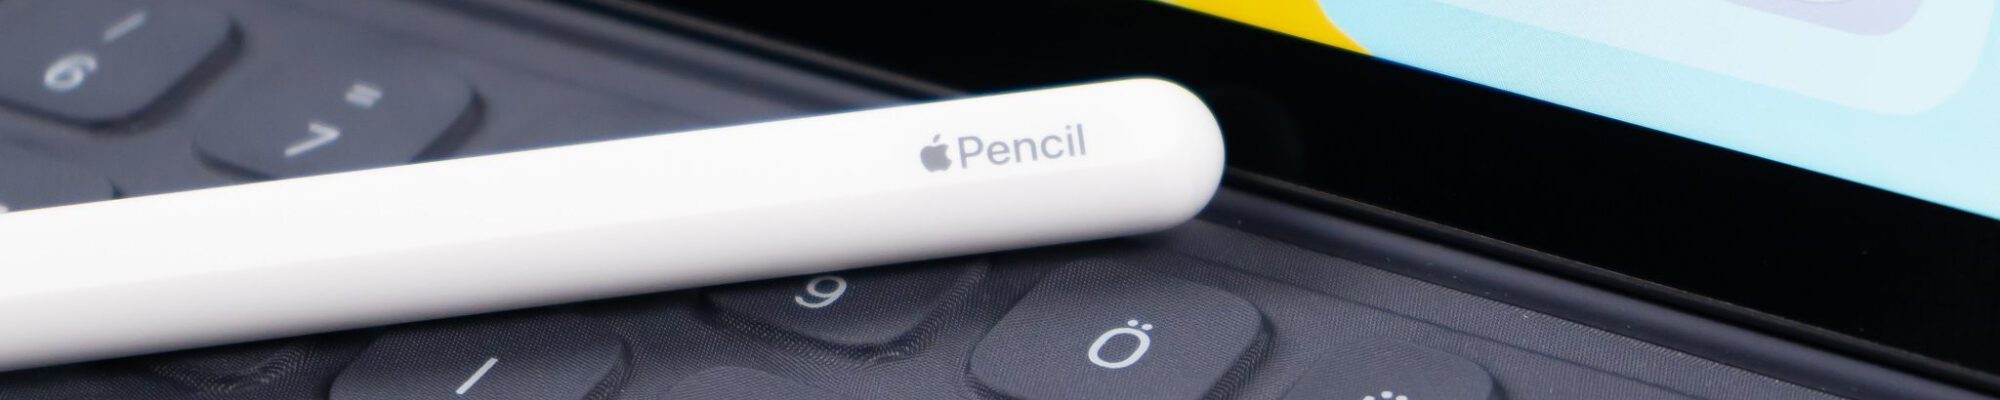 white pencil stylus on grey laptop